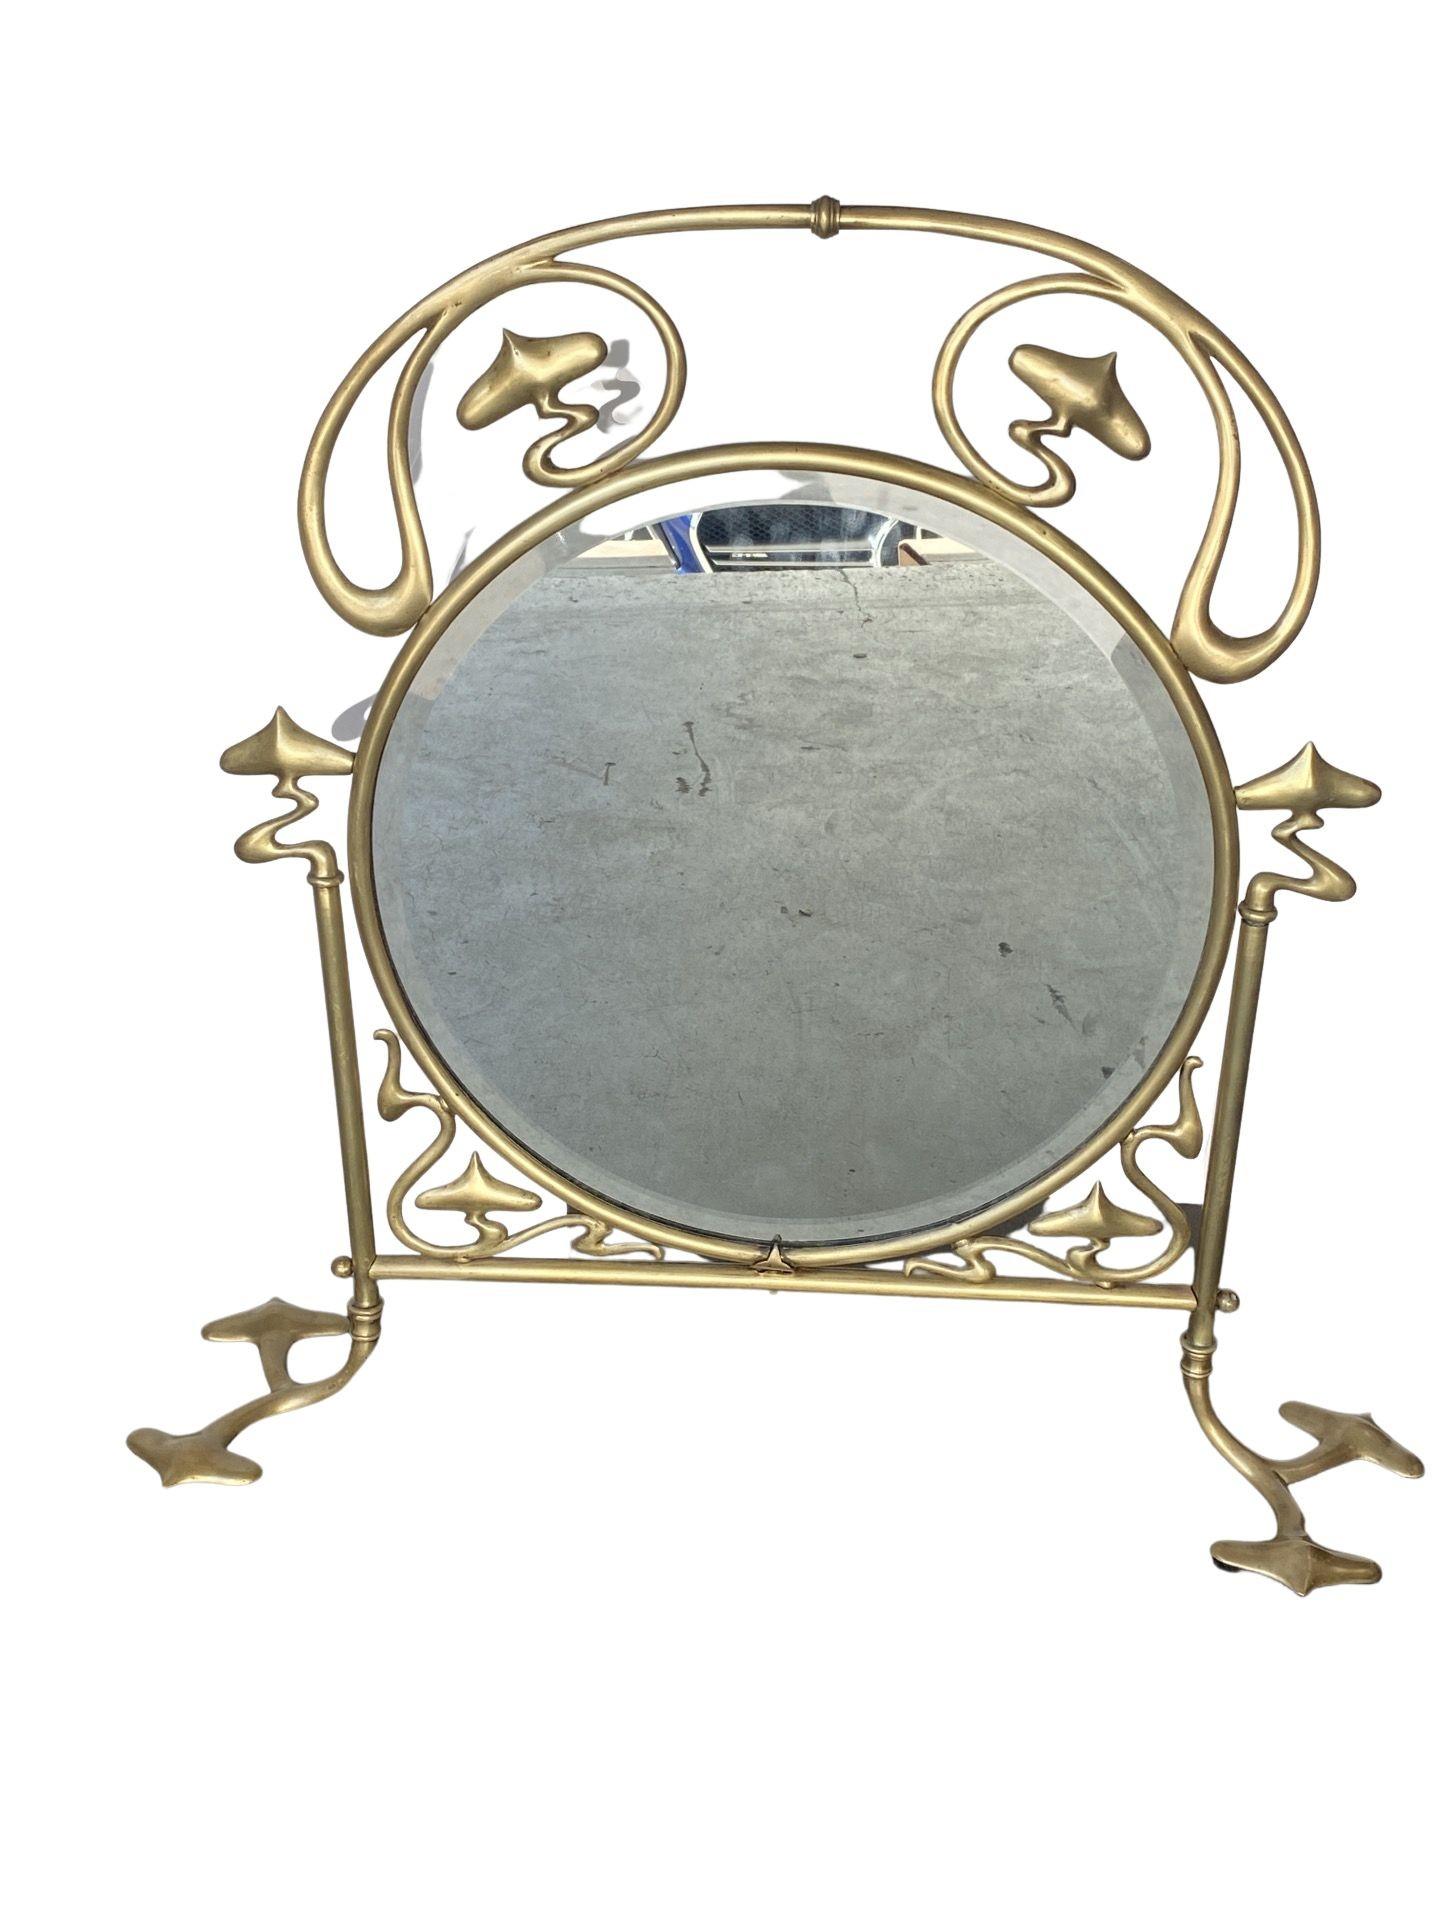 Französischer Jugendstil-Feuerschirm aus massivem Messingguss mit einem abgeschrägten Spiegelglas entlang. Der Rahmen ist sehr dekorativ aus Ormolu mit einem Tragegriff an der Oberseite.

Abmessungen: 29 